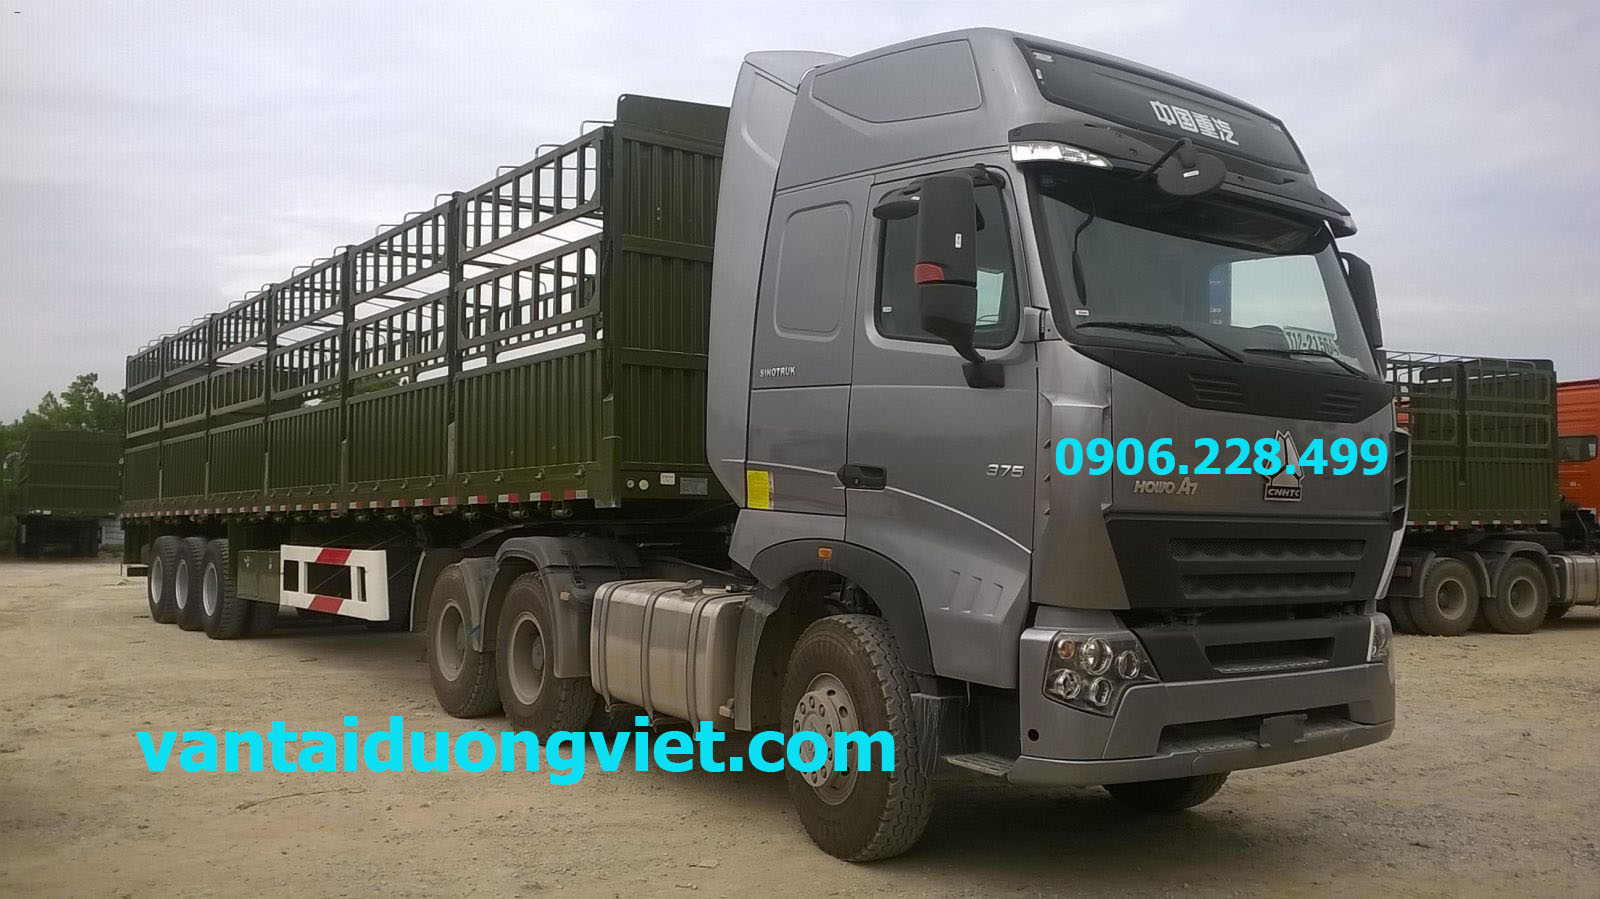 Cho thuê xe tải chuyển hàng 15 tấn tại HCM, thue xe tai chuyen hang- can thue xe tai cho hang- cho thue xe tai - dic vu thue xe tai